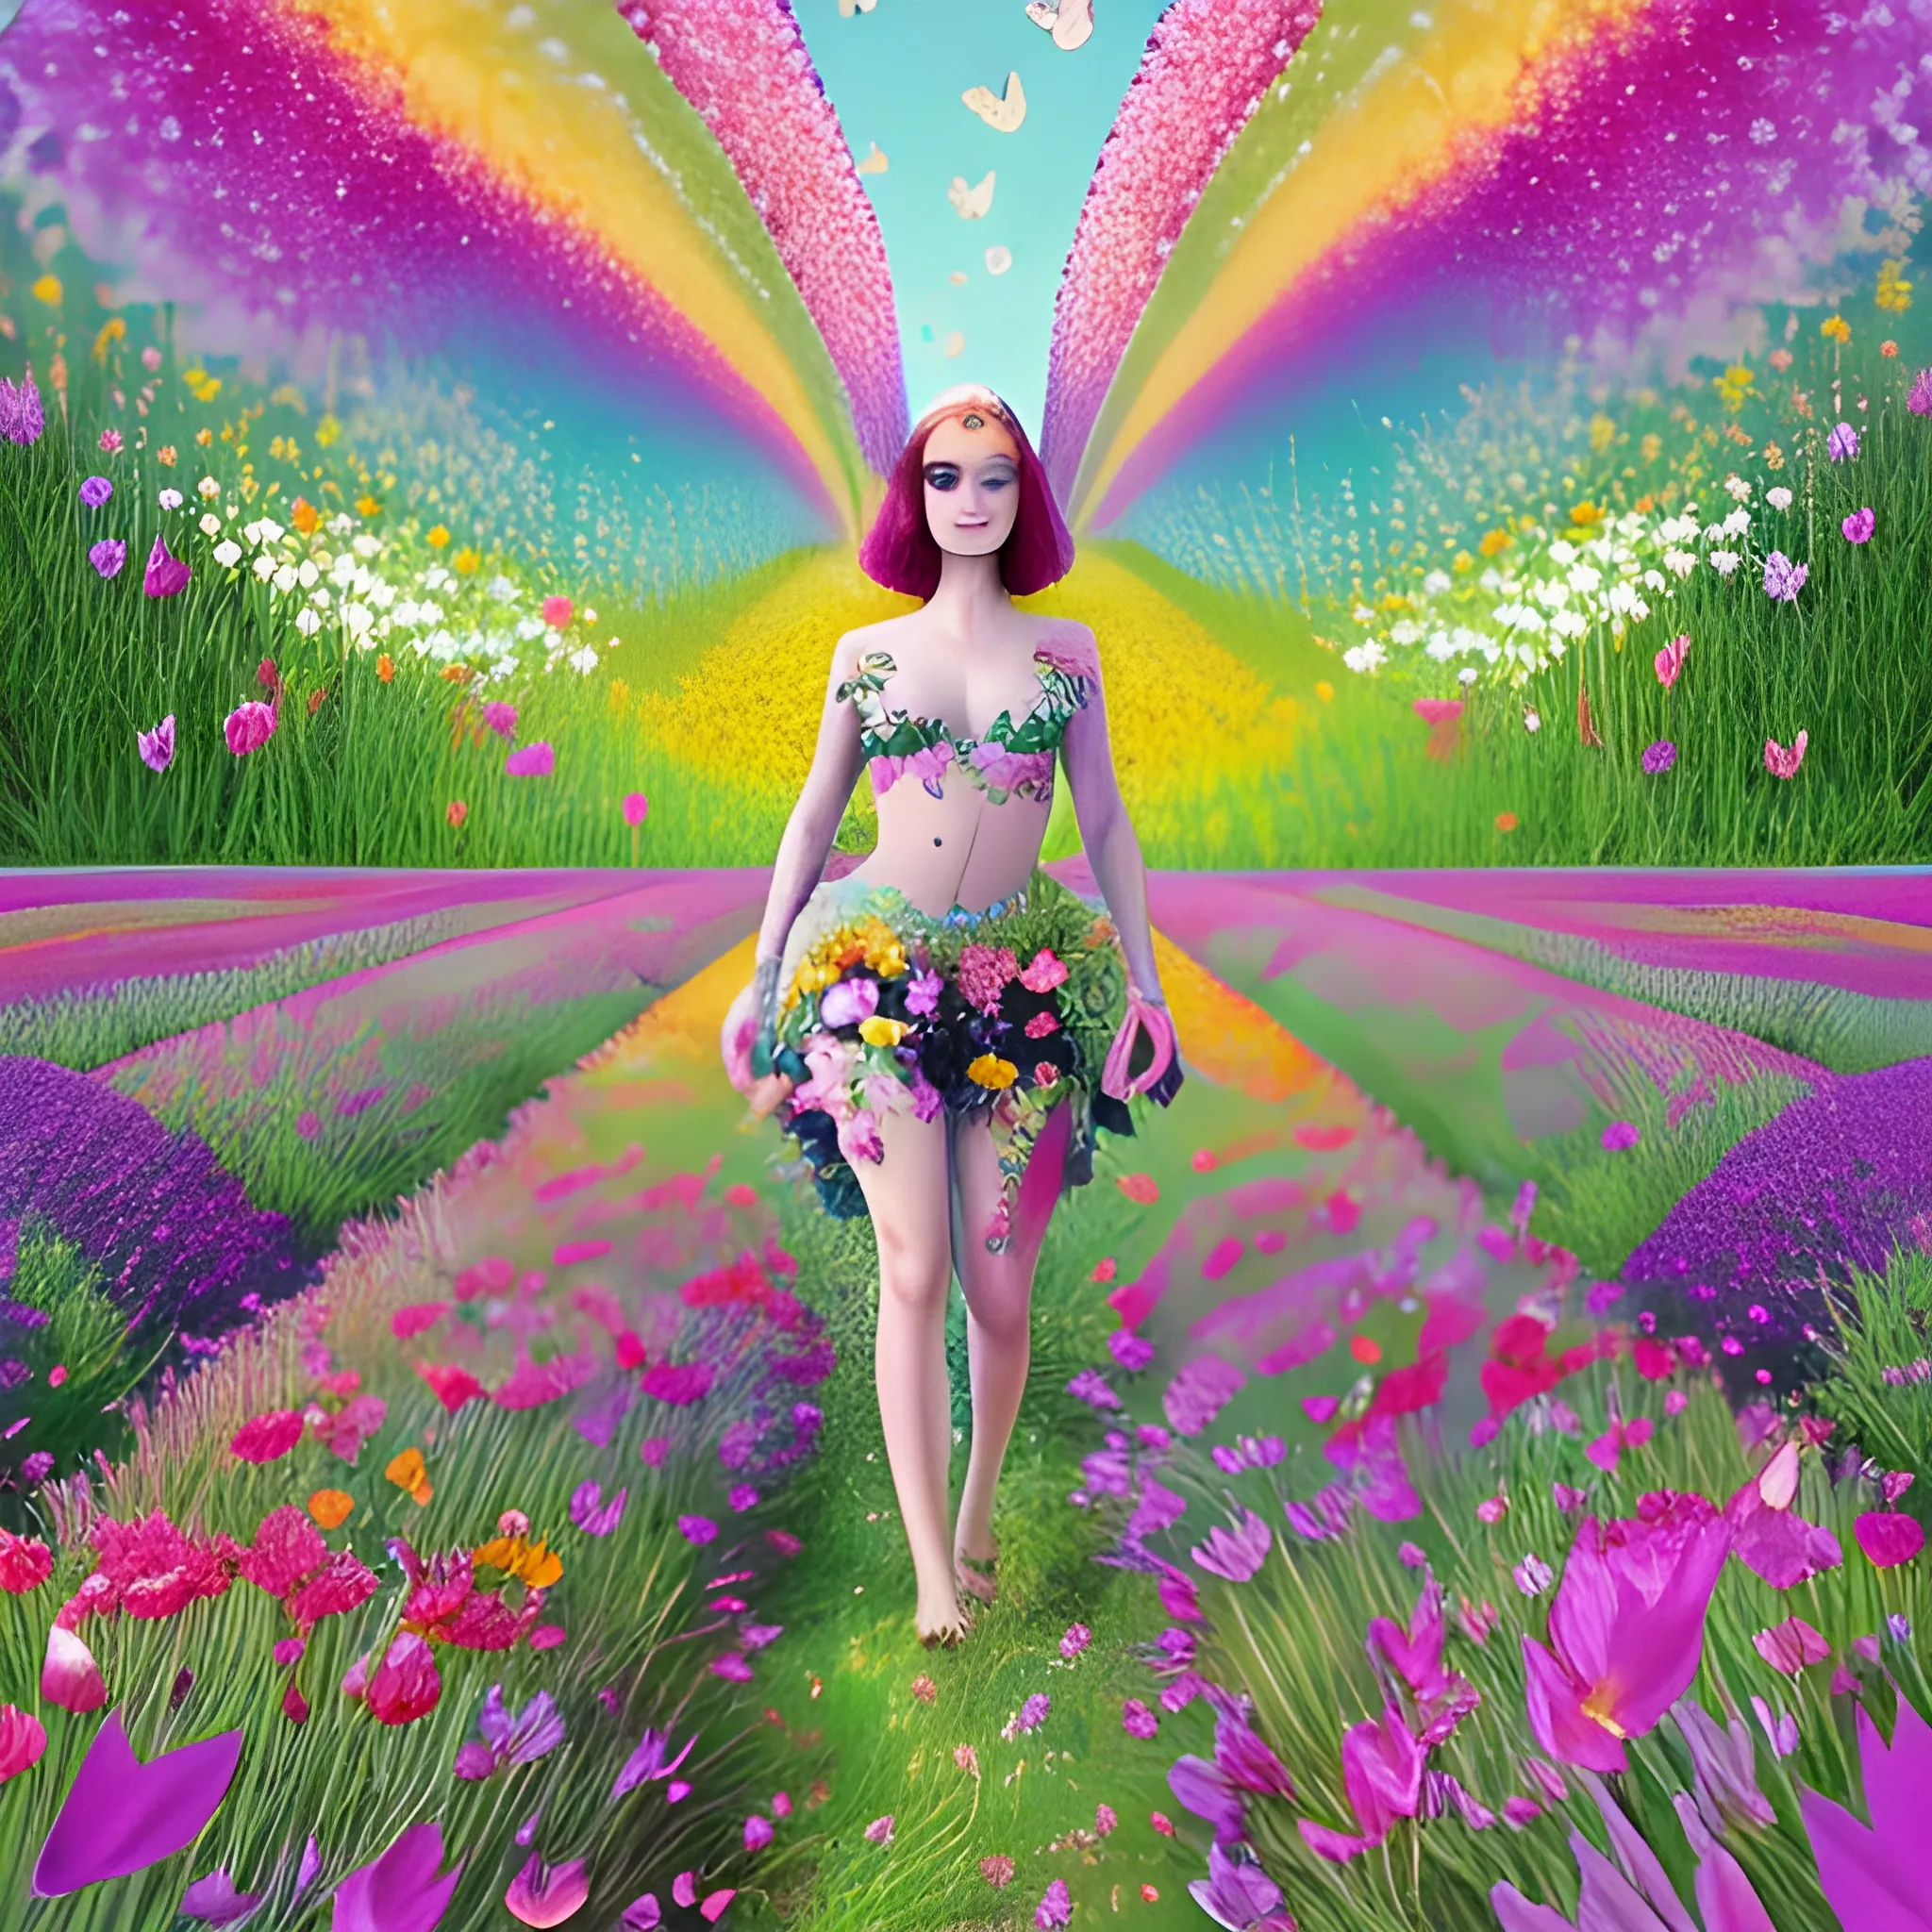 jolie femme dans une prairie fleurie et des papillons multicolores qui volent autour de la jolie femme debout dans la prairie fleurie de beaucoup de fleurs exotiques colorées, 4K ulta, Trippy